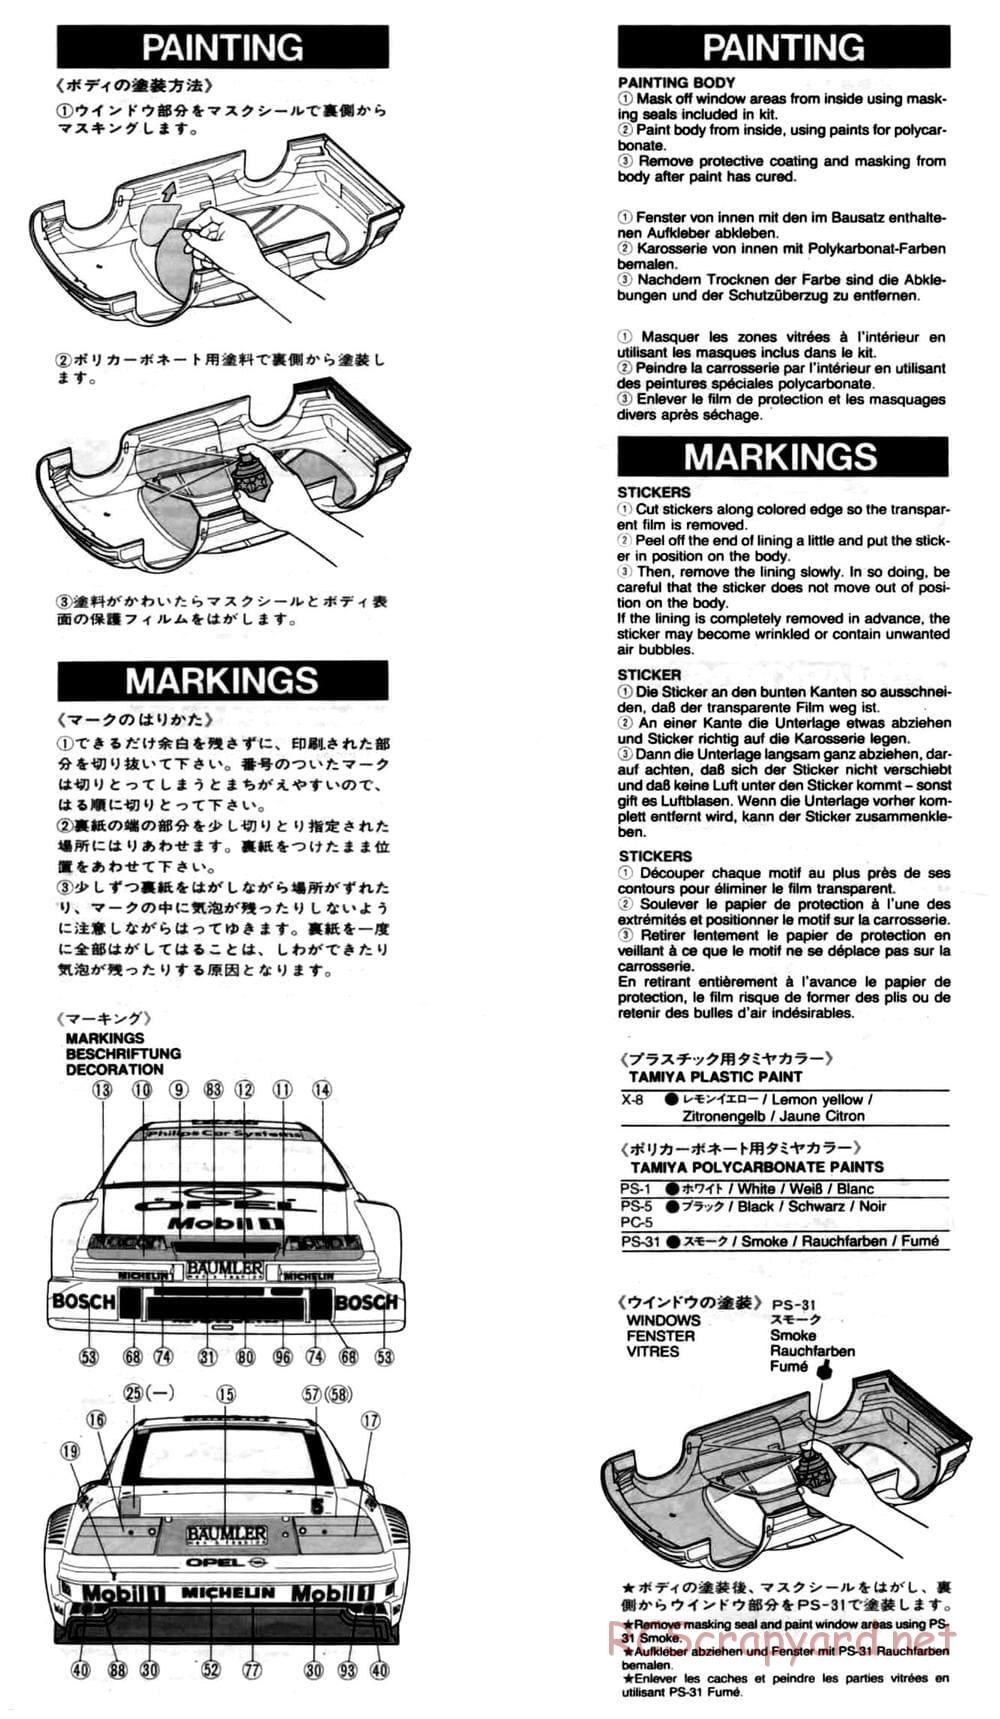 Tamiya - Opel Calibra V6 DTM - TA-02 Chassis - Manual - Page 17